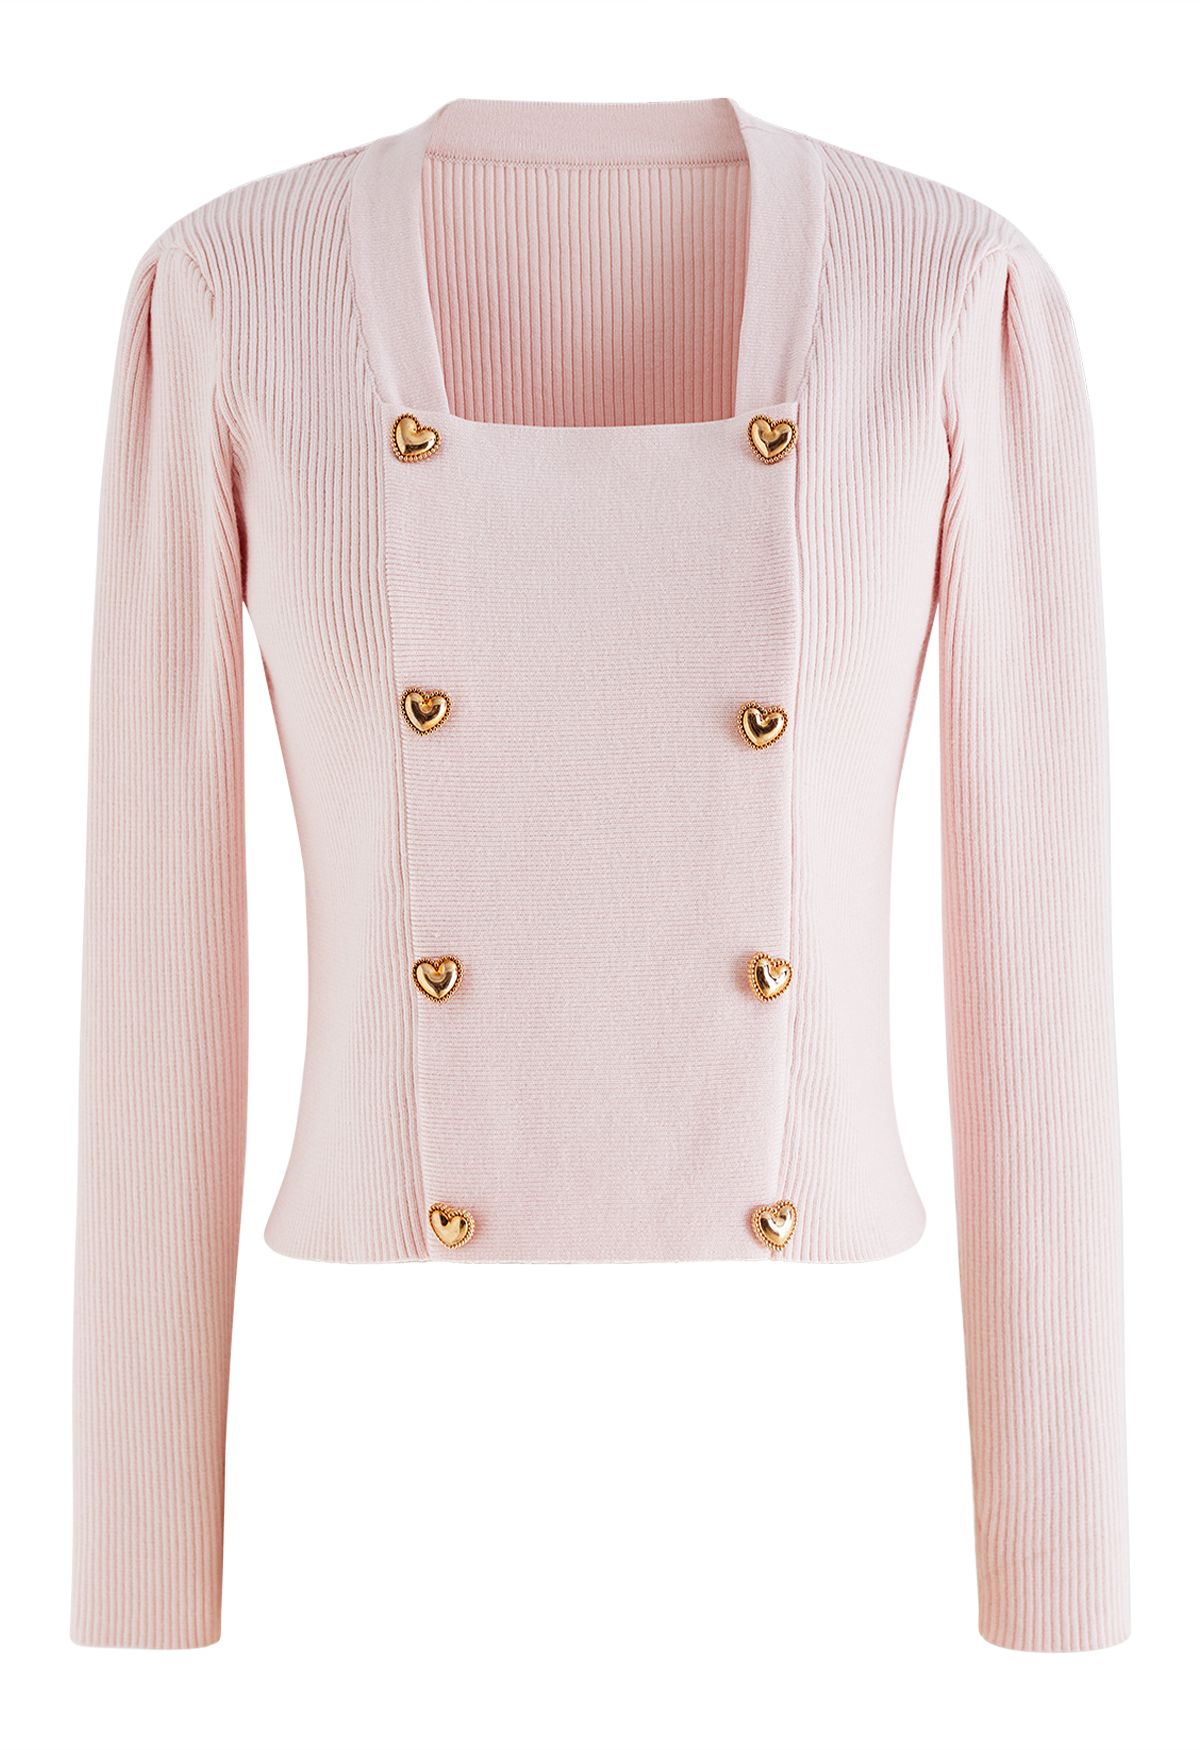 Top in maglia con scollo quadrato e bottoni a forma di cuore in rosa chiaro